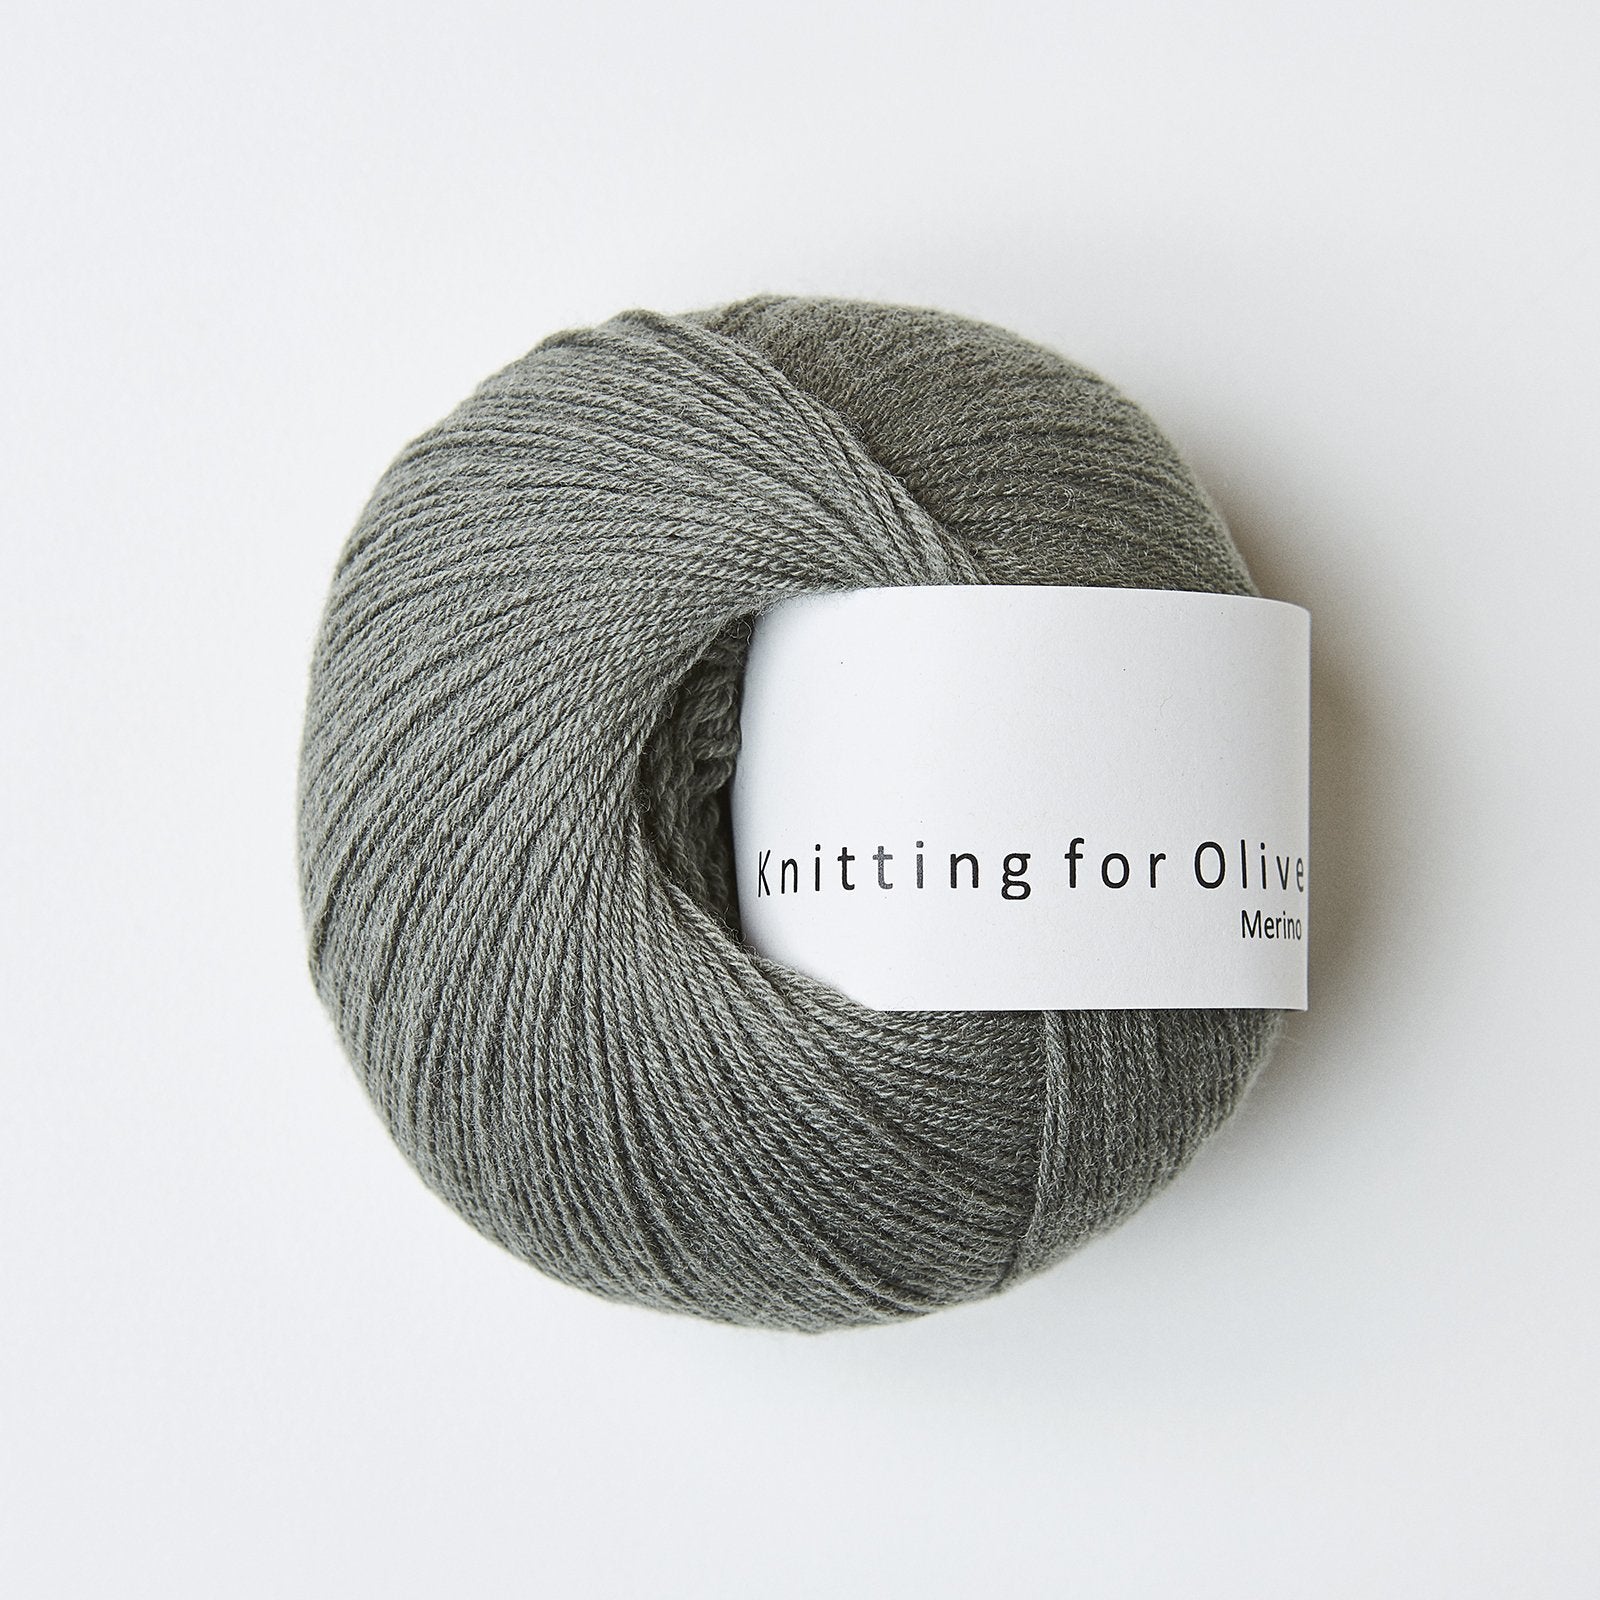 Knitting for Olive Merino Støvet Søgrøn garn